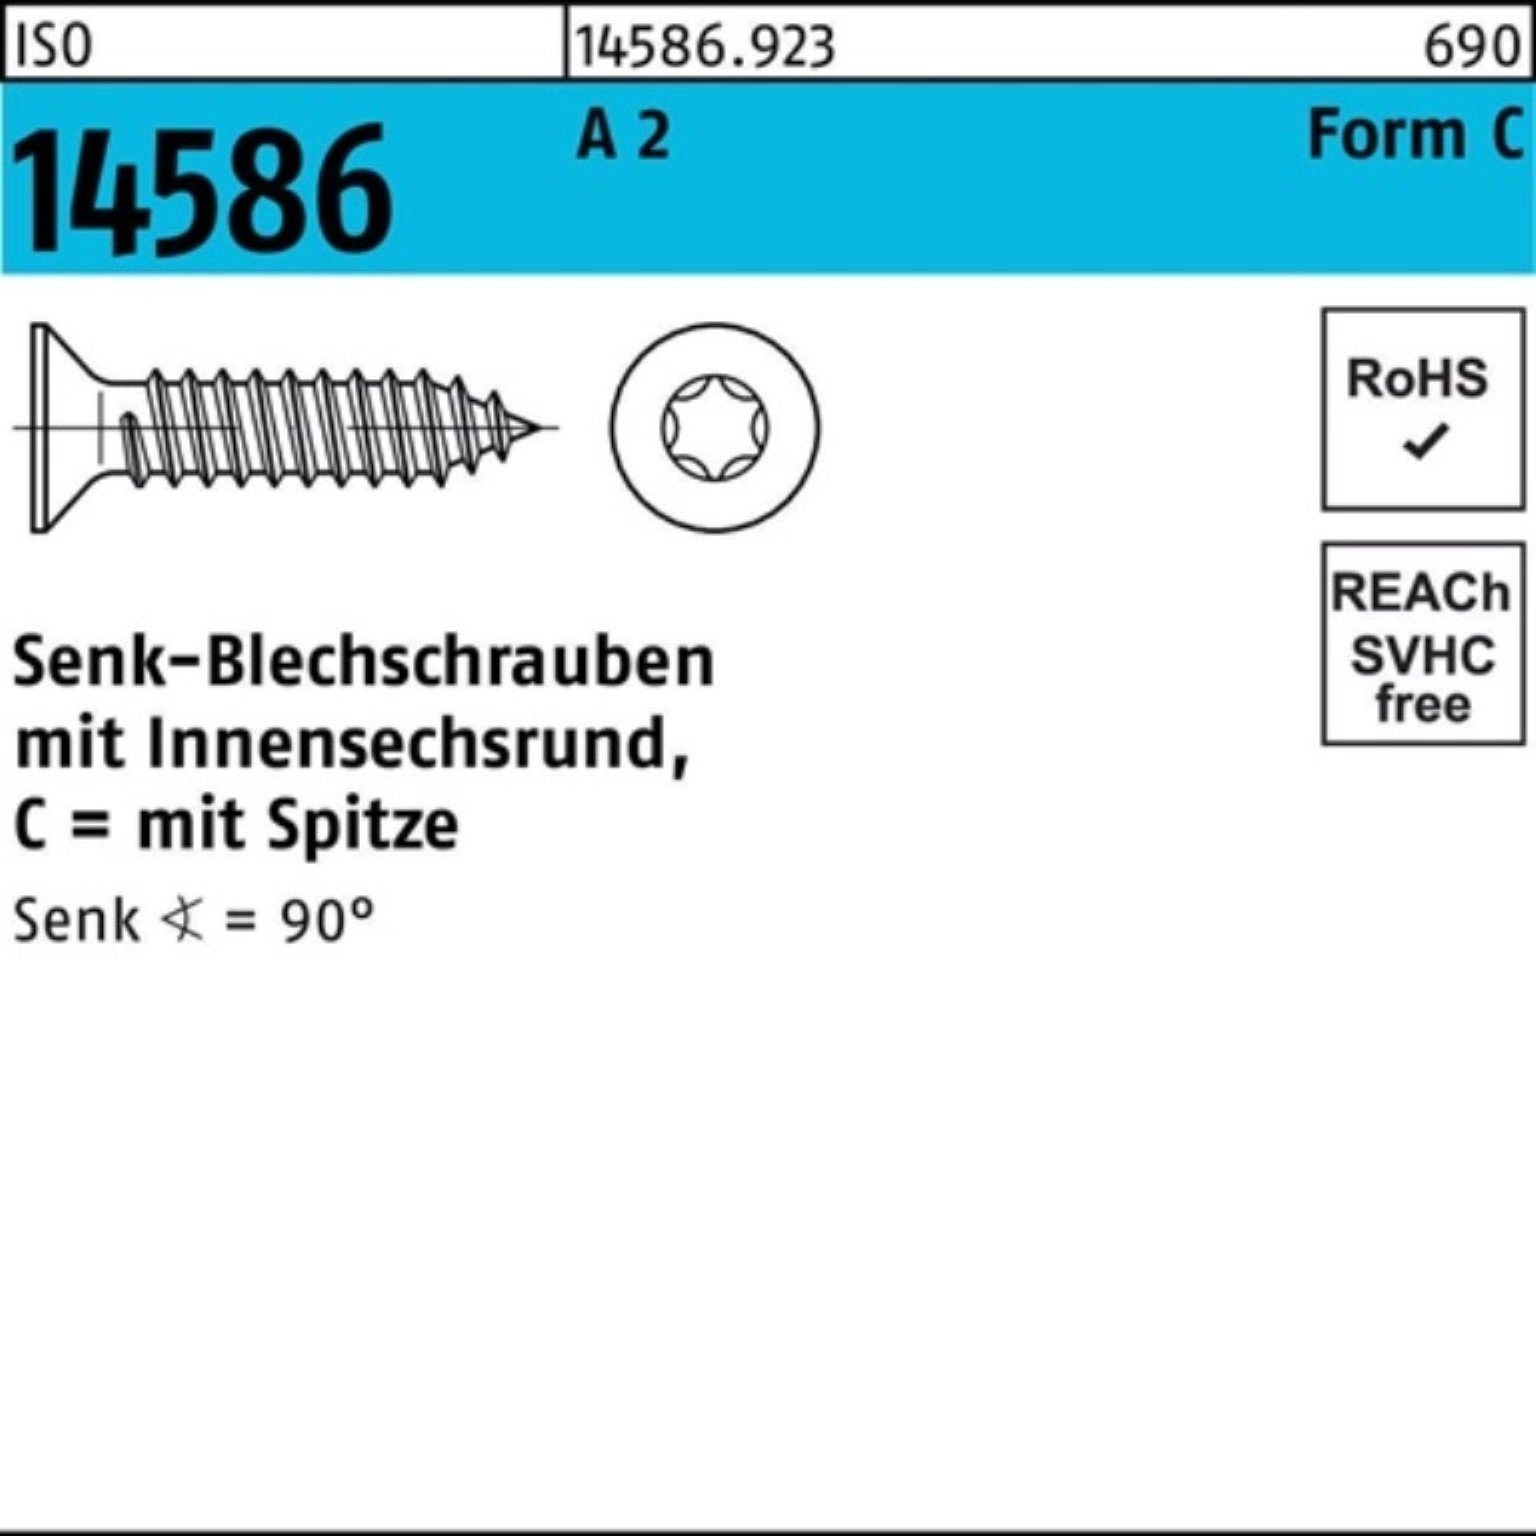 19 6,3x ISO Schraube ISR/Spitze Senkblechschraube Pack 5 -C 500er 2 Reyher T30 14586 A